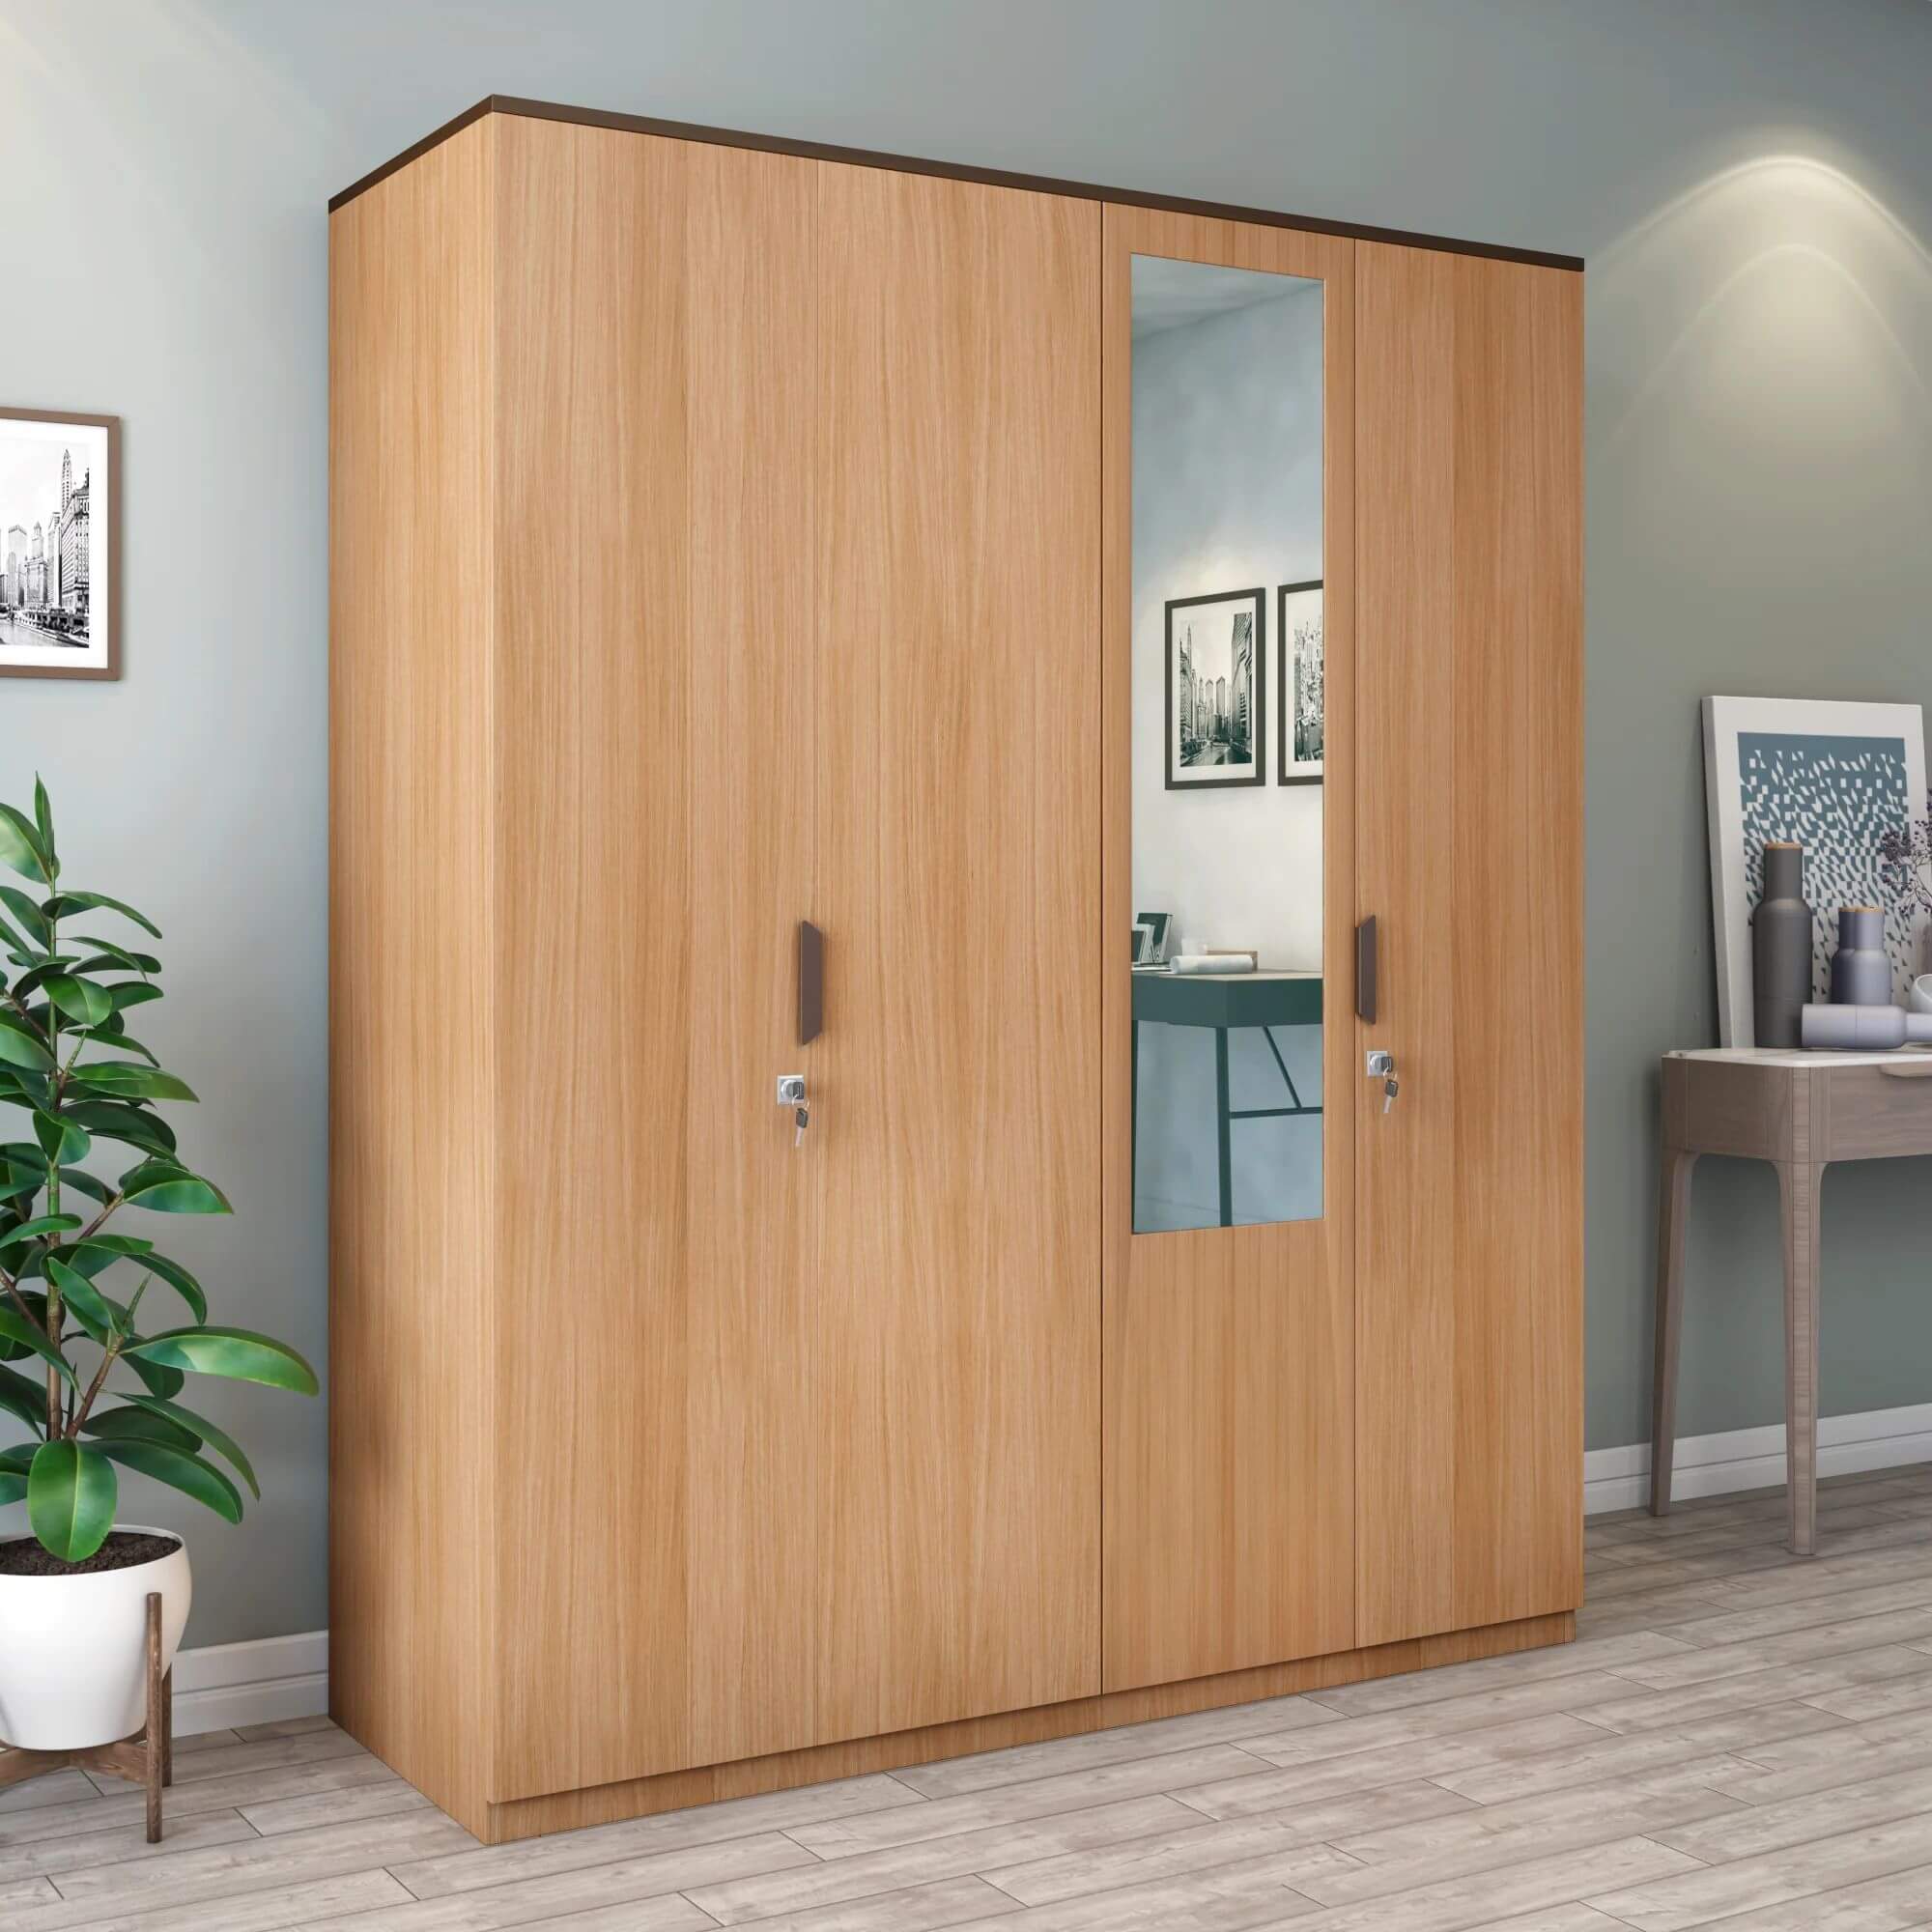 Chất liệu gỗ tự nhiên giúp cho thiết kế tủ quần áo phòng ngủ hiện đại sang trọng hơn